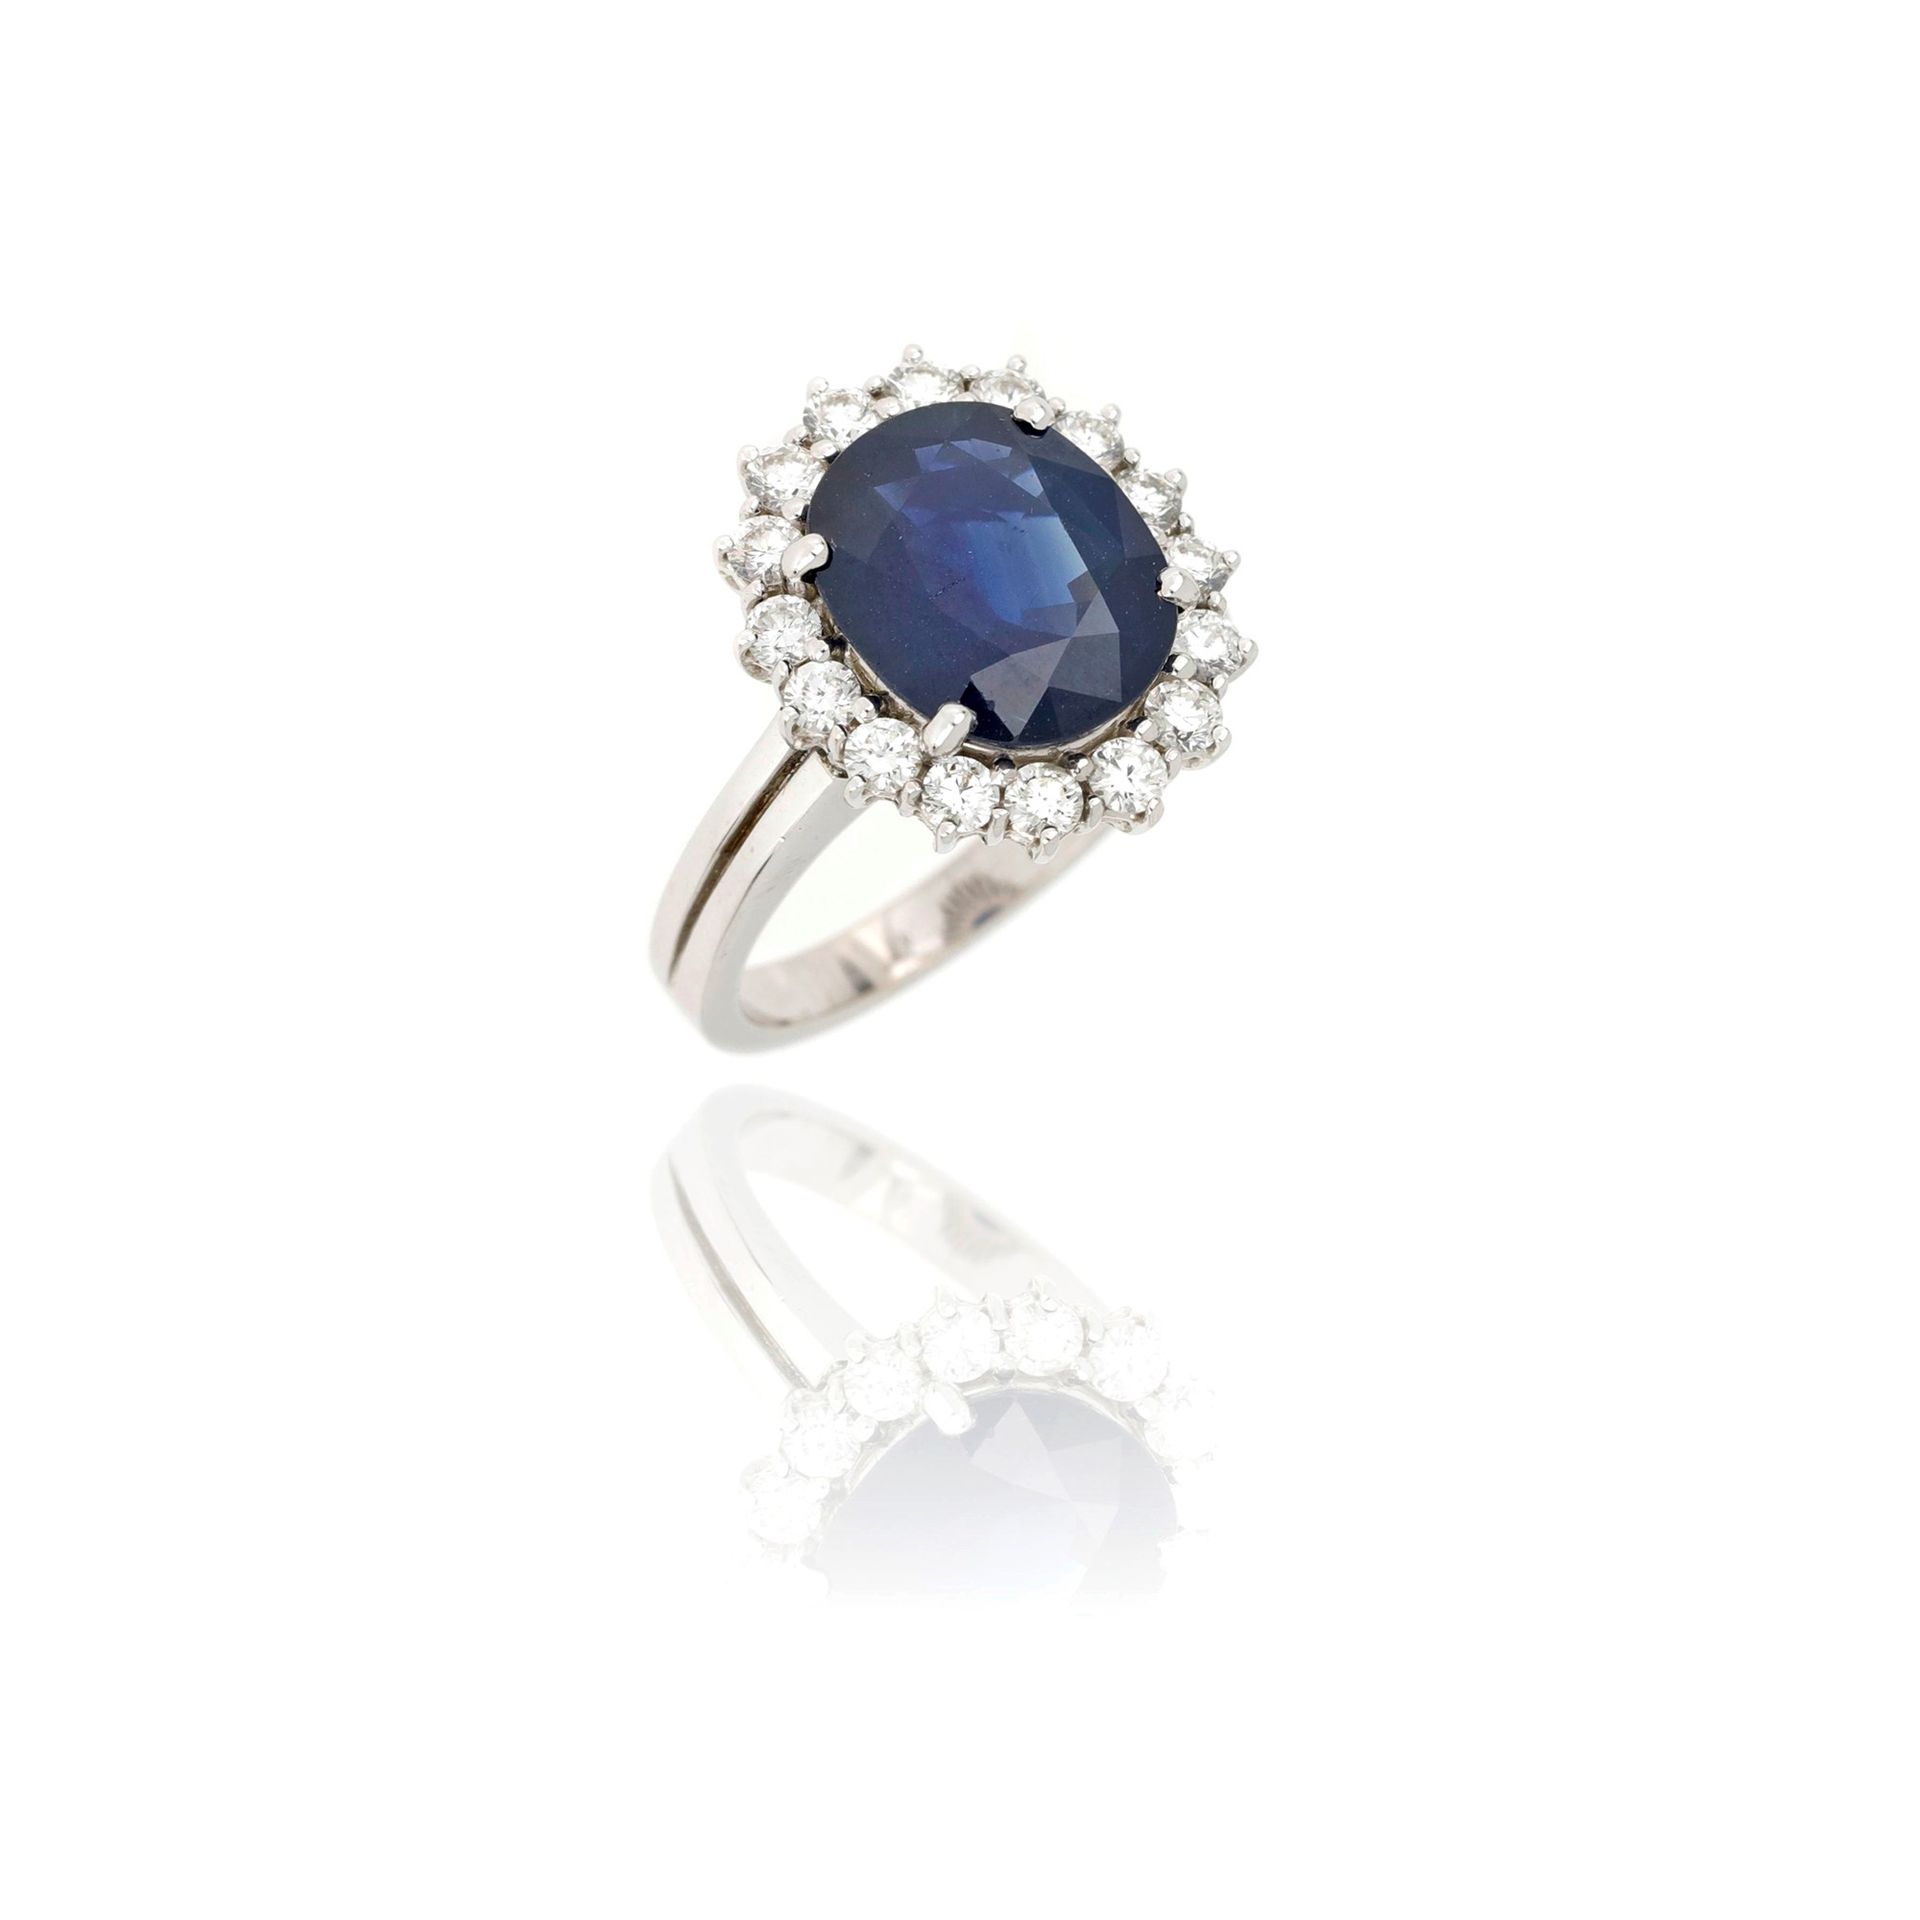 Null 18K白金戒指，镶有一颗约5.45克拉的椭圆形蓝宝石，周围是总计约0.80克拉的明亮式切割钻石。 

尺寸13/53

重量7.61克

18K白金戒&hellip;